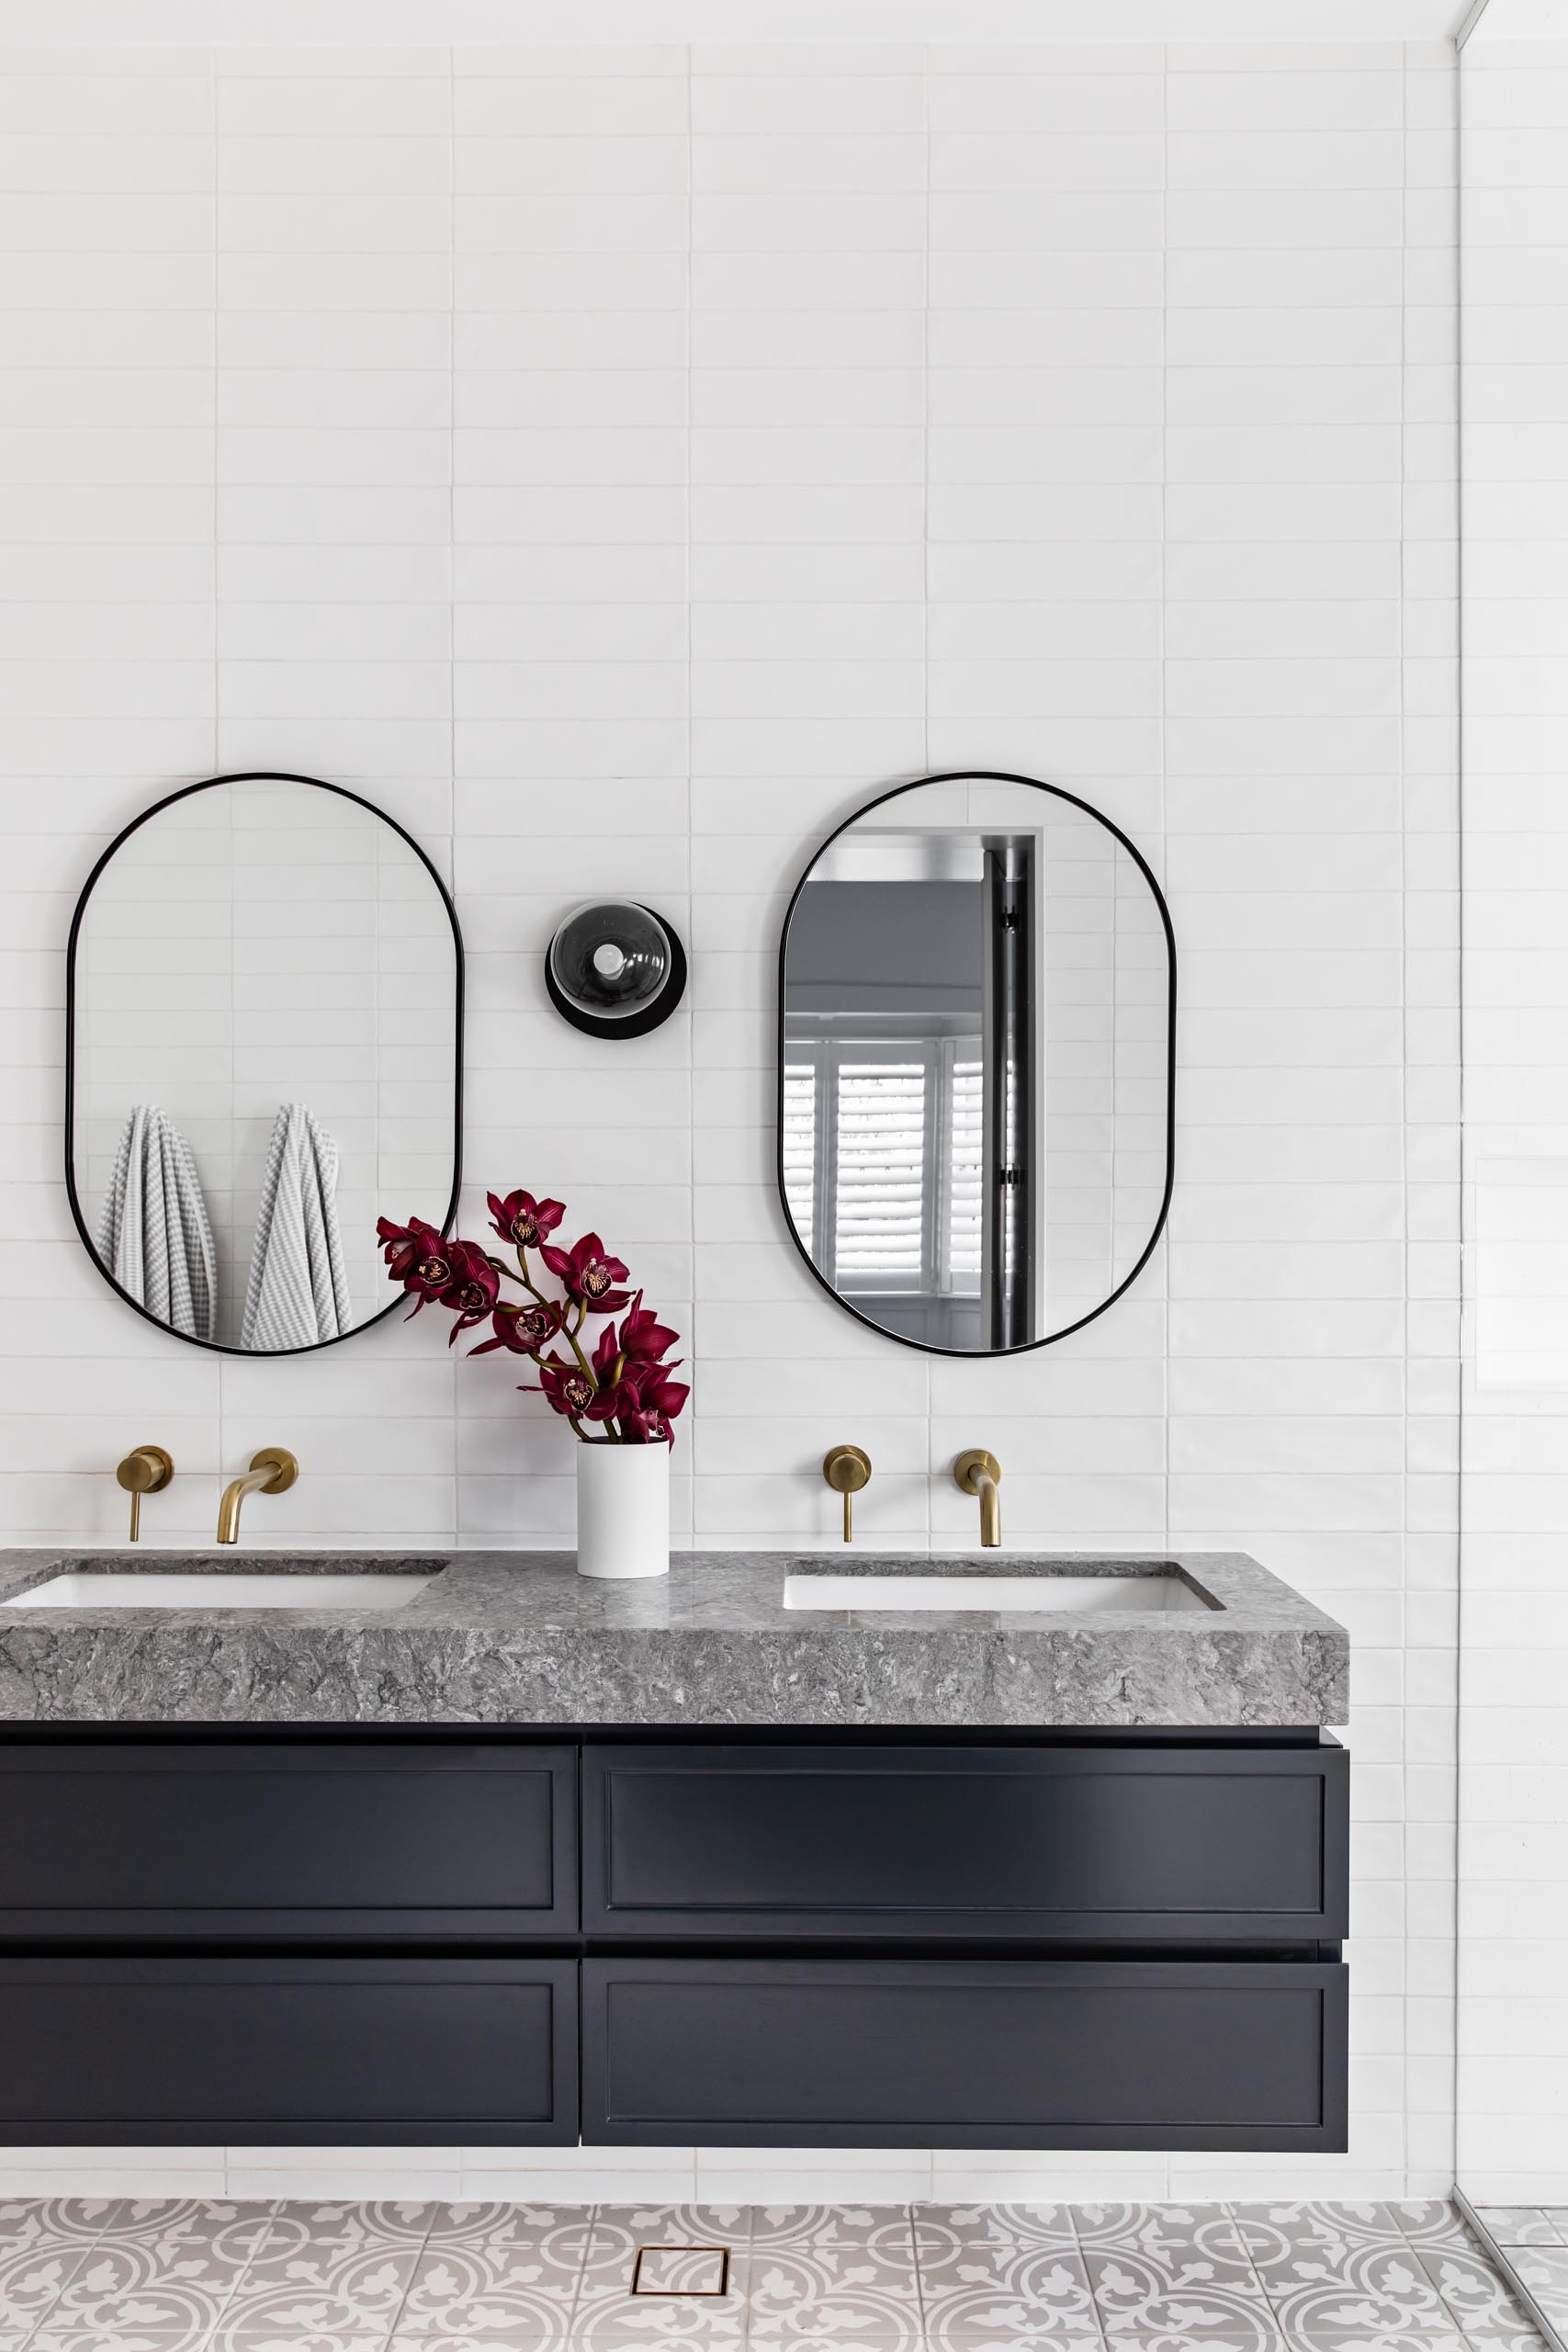 Современная ванная комната с узорчатой ​​плиткой на полу, плавающий черный туалетный столик с серым камнем, белая плитка метро, ​​покрывающая стены, овальные зеркала в черной рамке и латунная фурнитура.